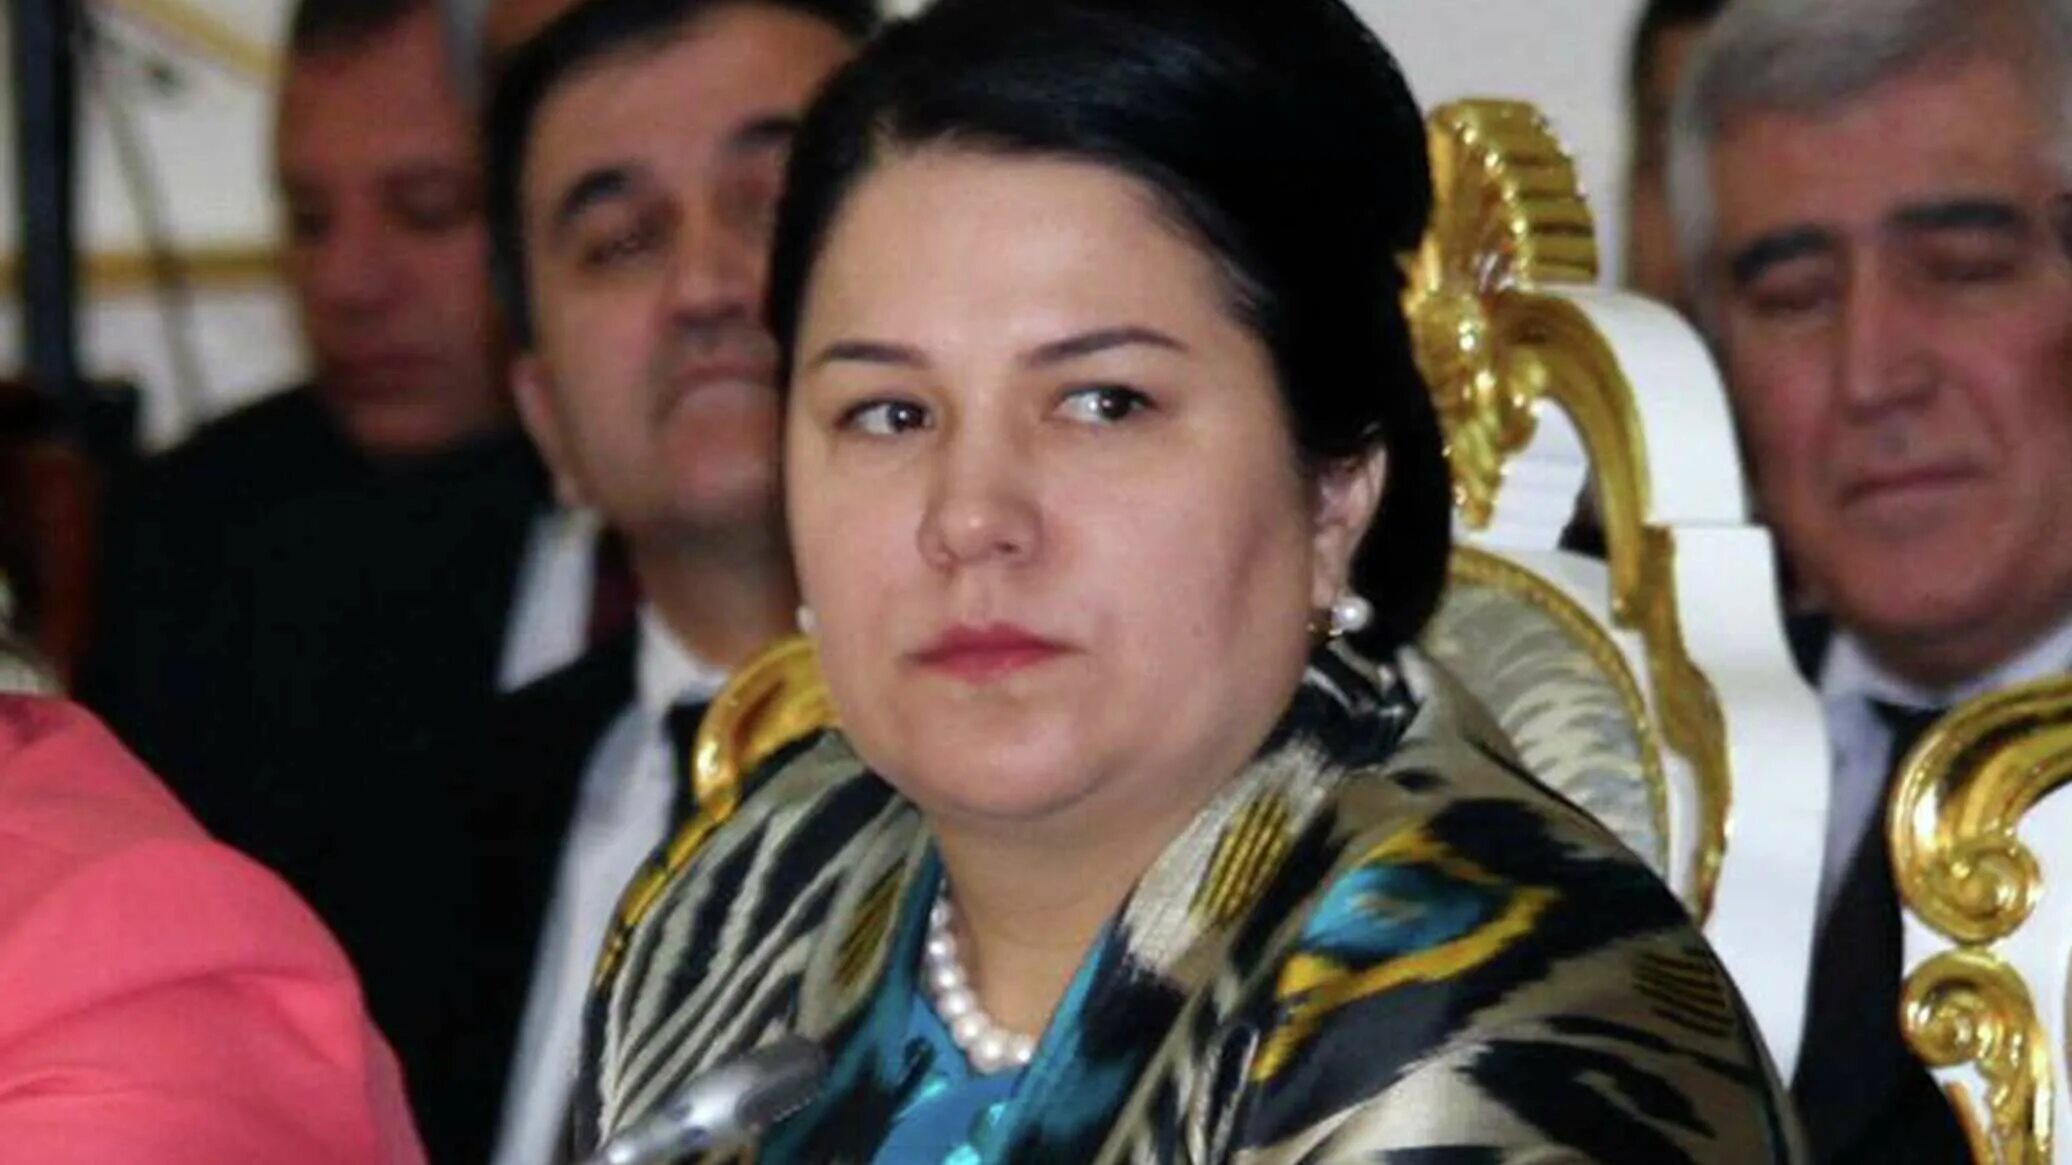 Таджикский биография. Дочь президента Эмомали Рахмон. Тахмина Рахмонова дочь президента Таджикистана. Жена президента Таджикистана Эмомали Рахмон.